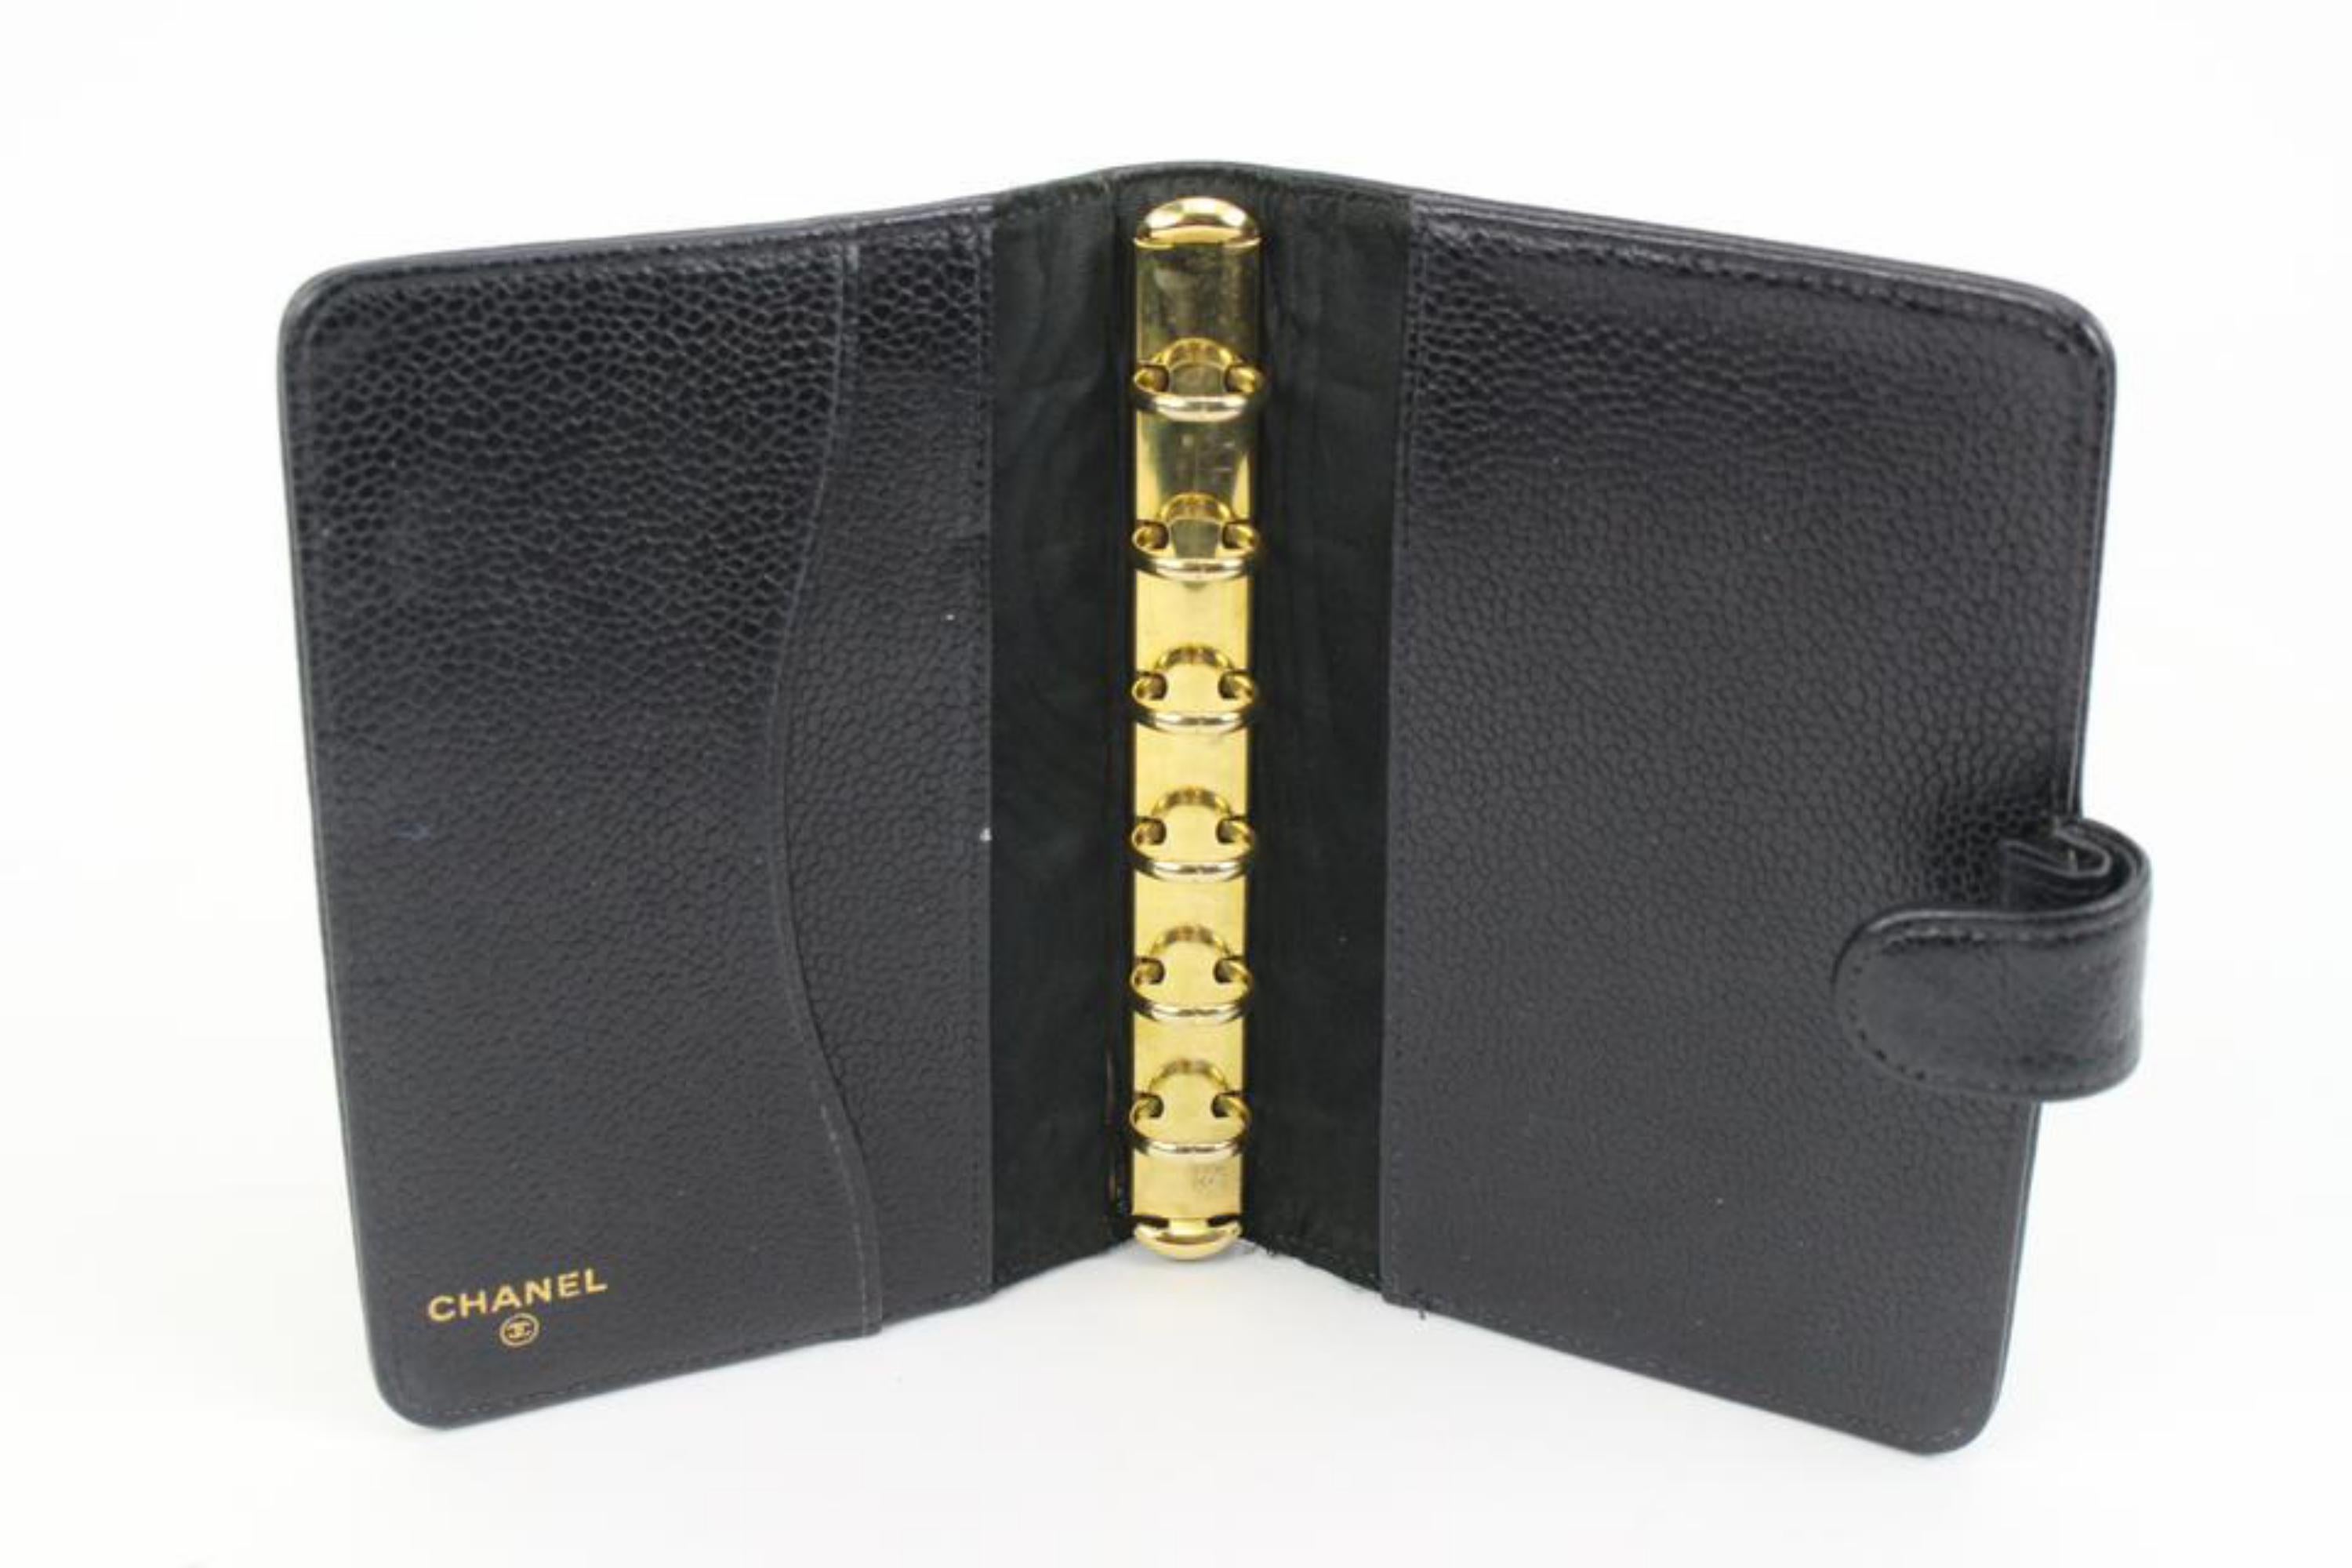 Chanel Black Caviar Leather Agenda Cover 98cz412s 6